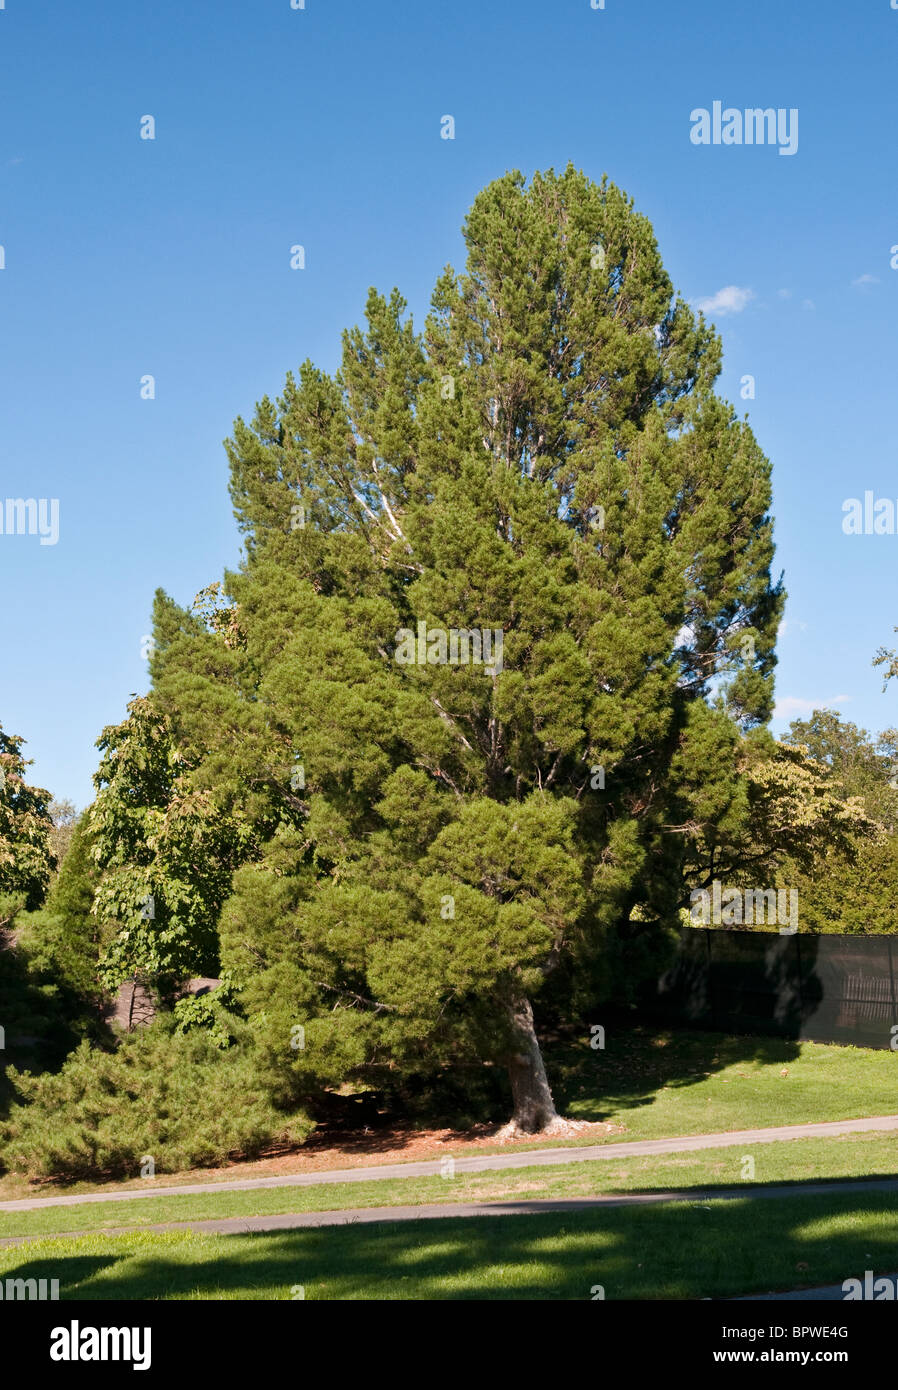 Lacebark Pine - Pinus bungeana Stock Photo